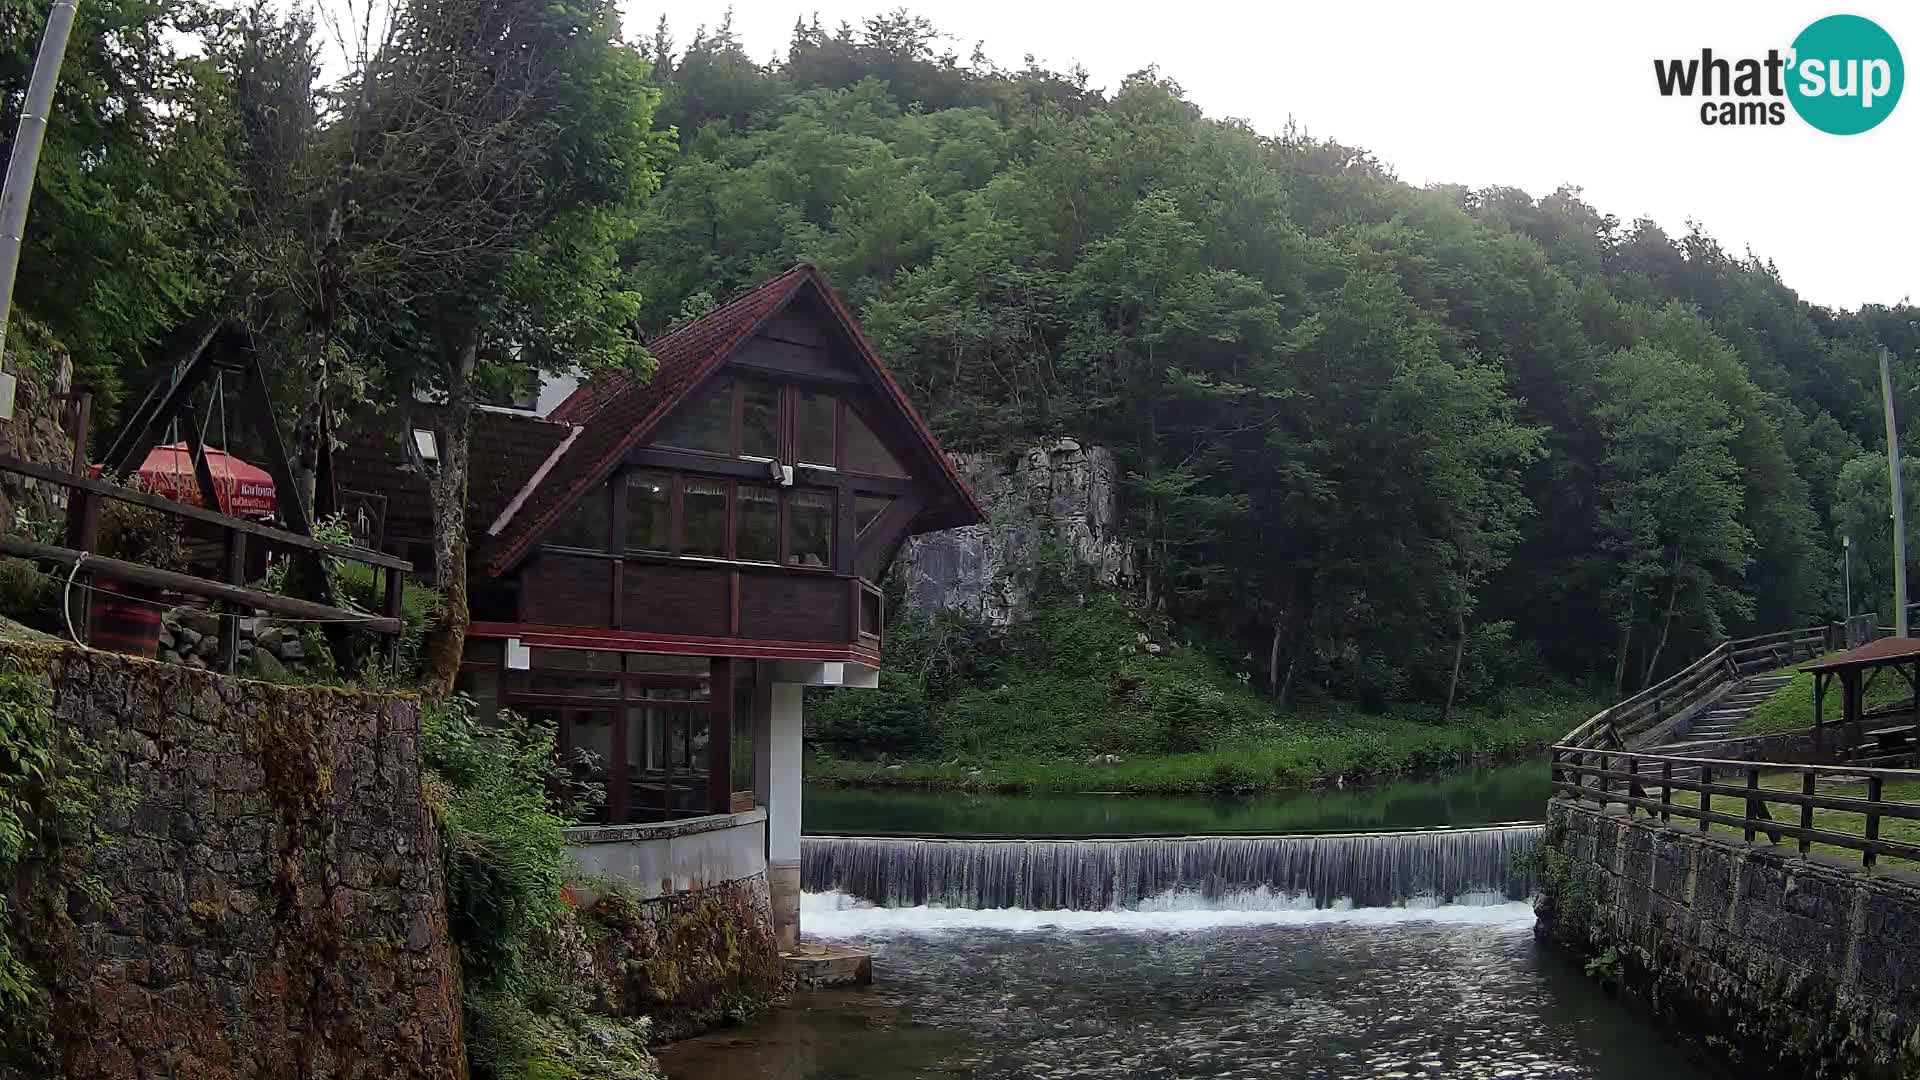 Camera en vivo Cañón Kamačnik – Vrbovsko – Croacia